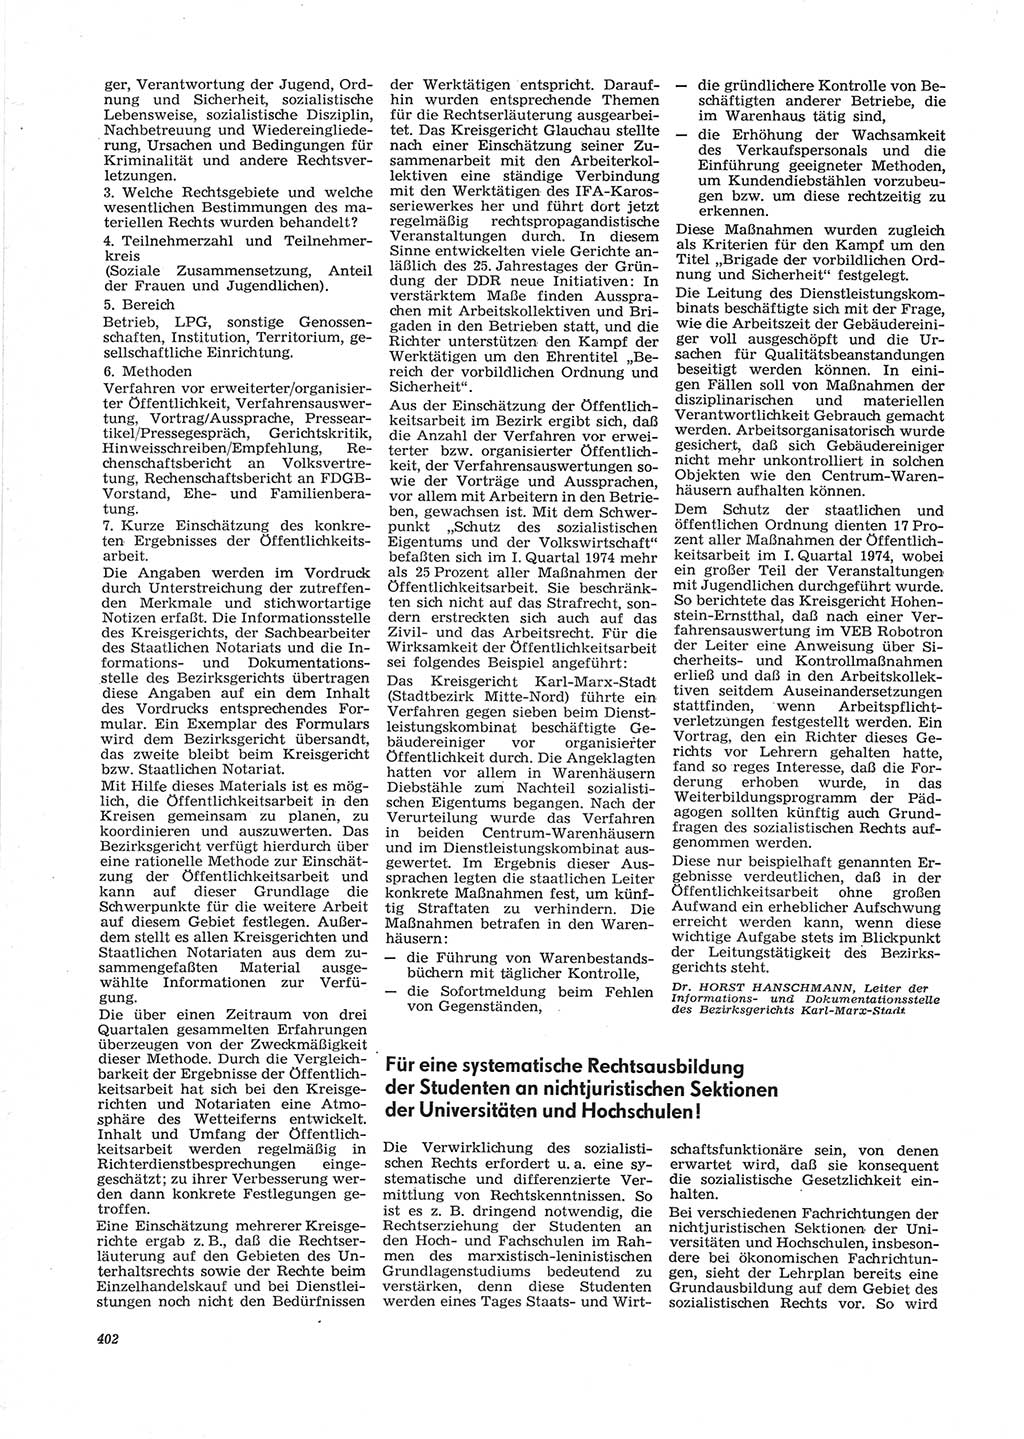 Neue Justiz (NJ), Zeitschrift für Recht und Rechtswissenschaft [Deutsche Demokratische Republik (DDR)], 28. Jahrgang 1974, Seite 402 (NJ DDR 1974, S. 402)